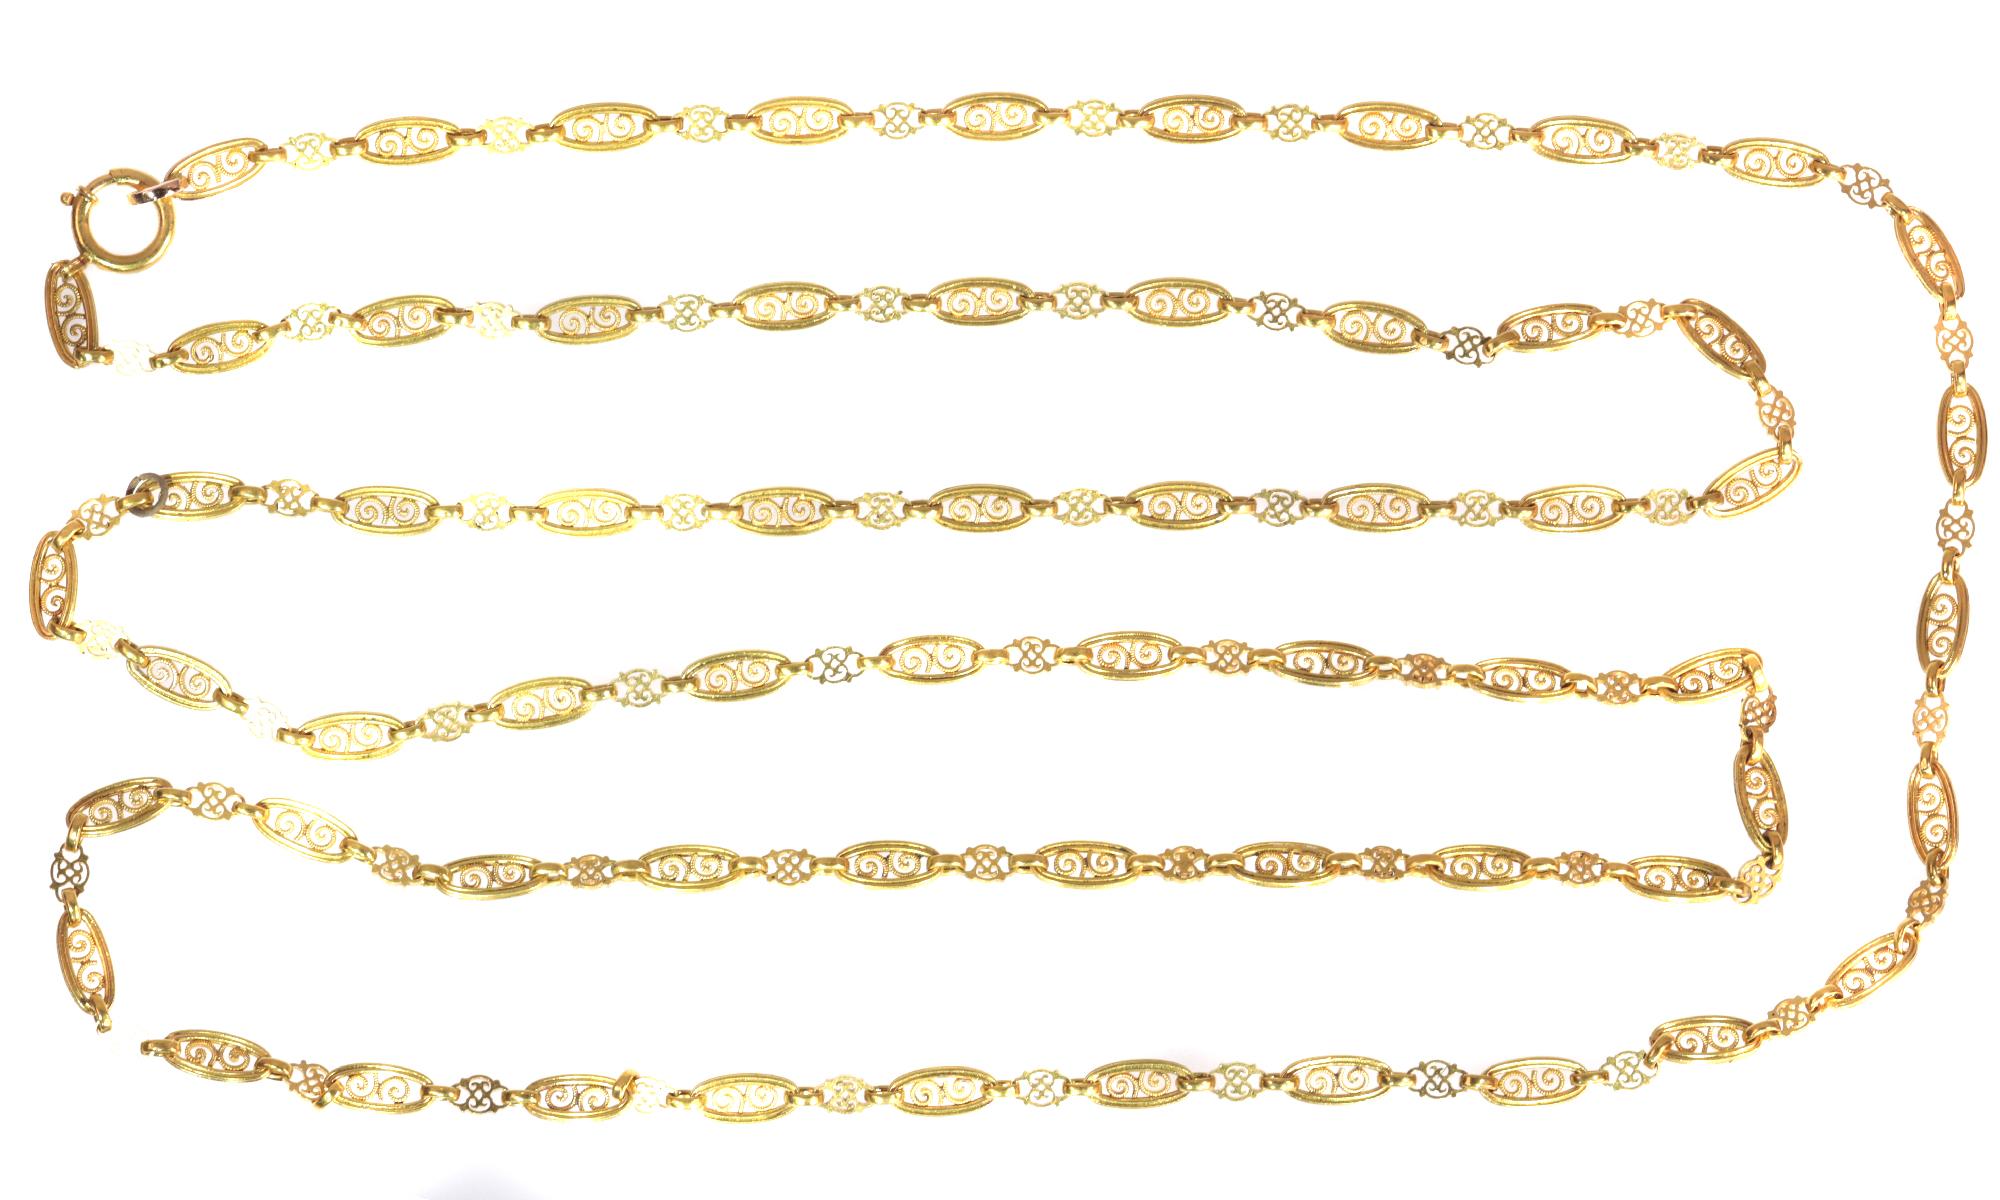 Victorian Antique 18 Karat Yellow Gold Long Sautoir Long Gold Necklace 135 cm Long For Sale